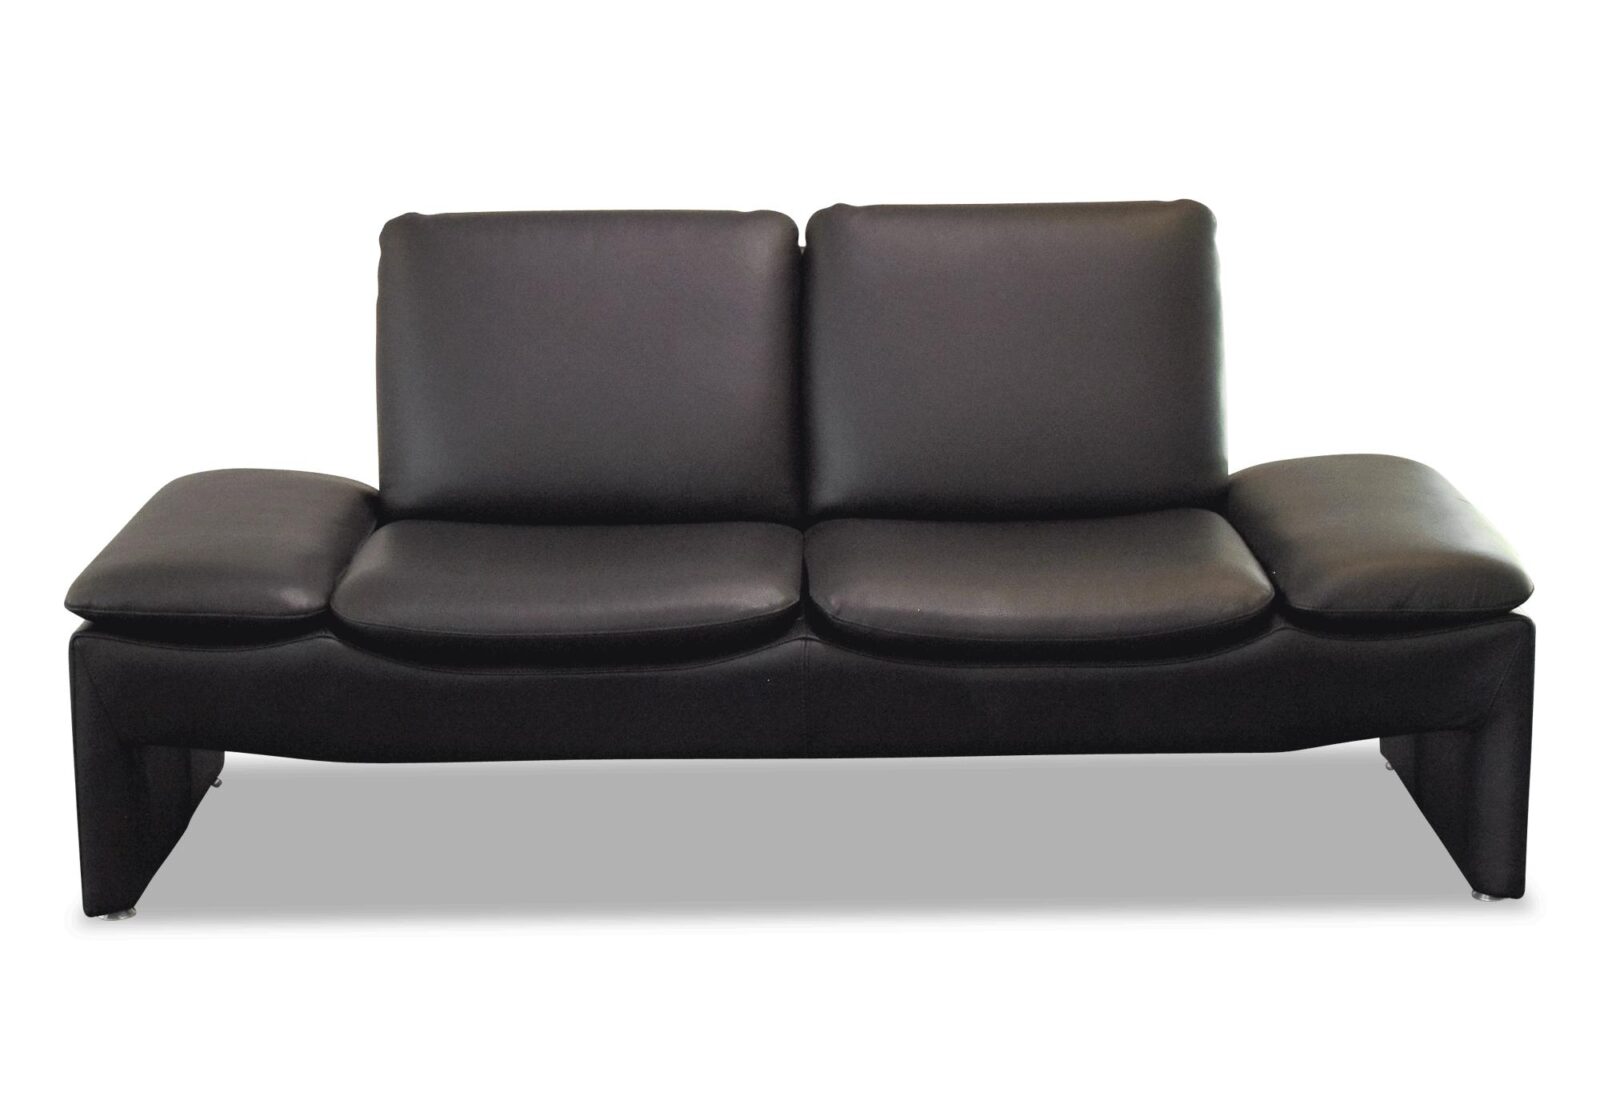 Sofa Baccara mit verstellbaren Armlehnen. Bezug: Leder. Farbe: Schwarz. Erhältlich bei Möbel Gallati.